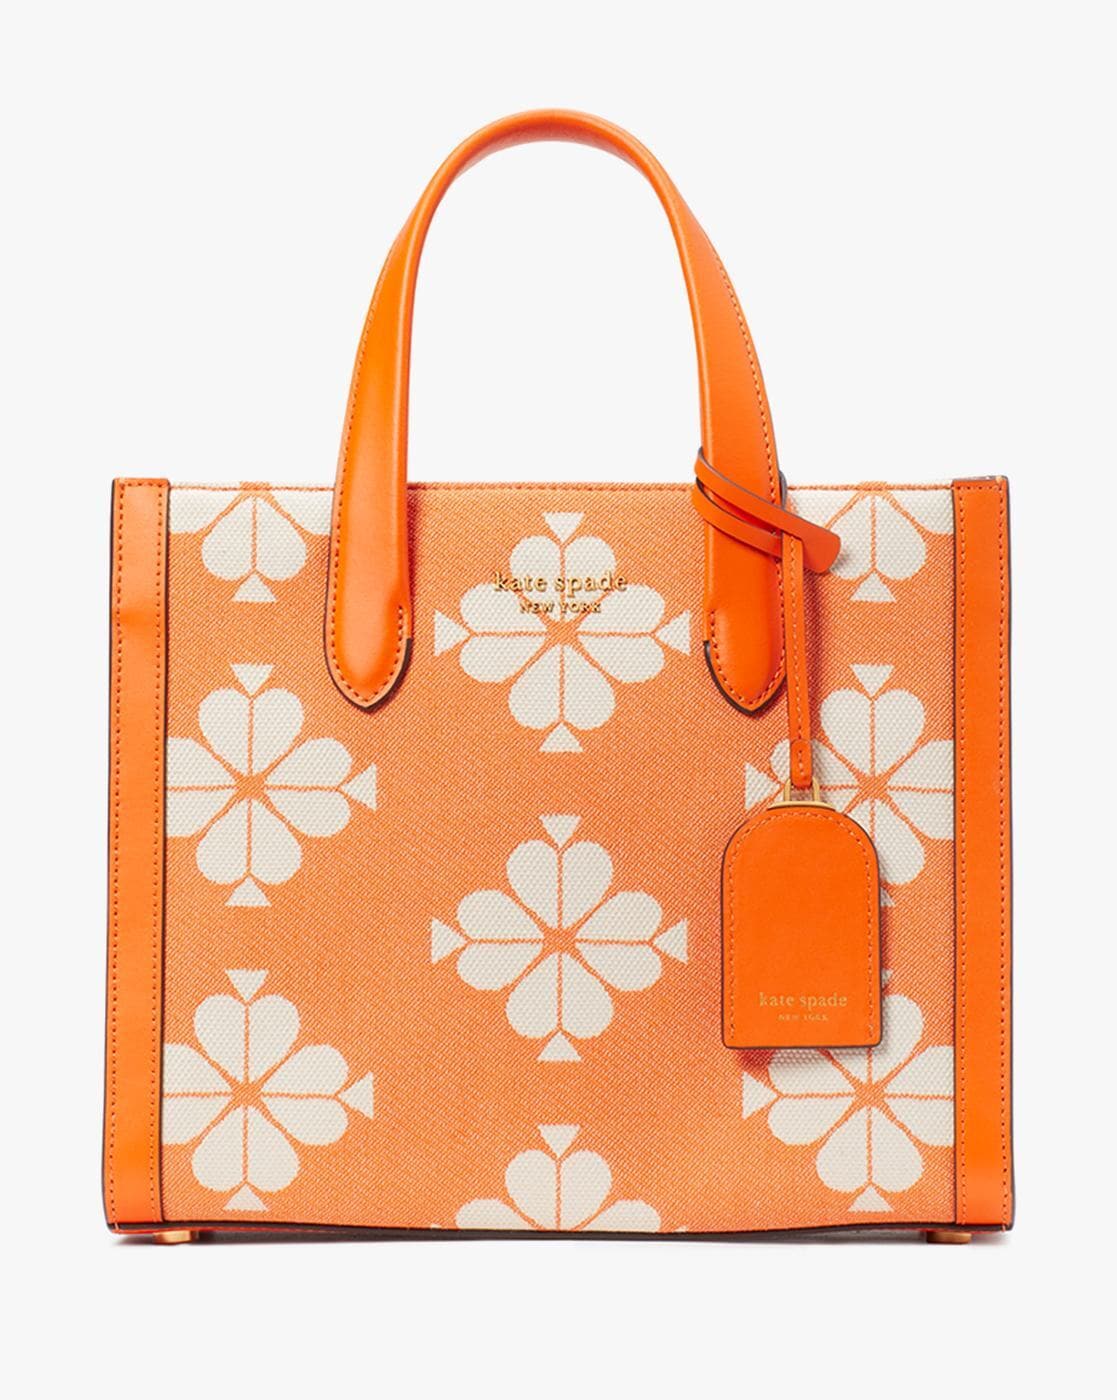 NWT Kate Spade Brynn Floral Tote Bag - Women's handbags